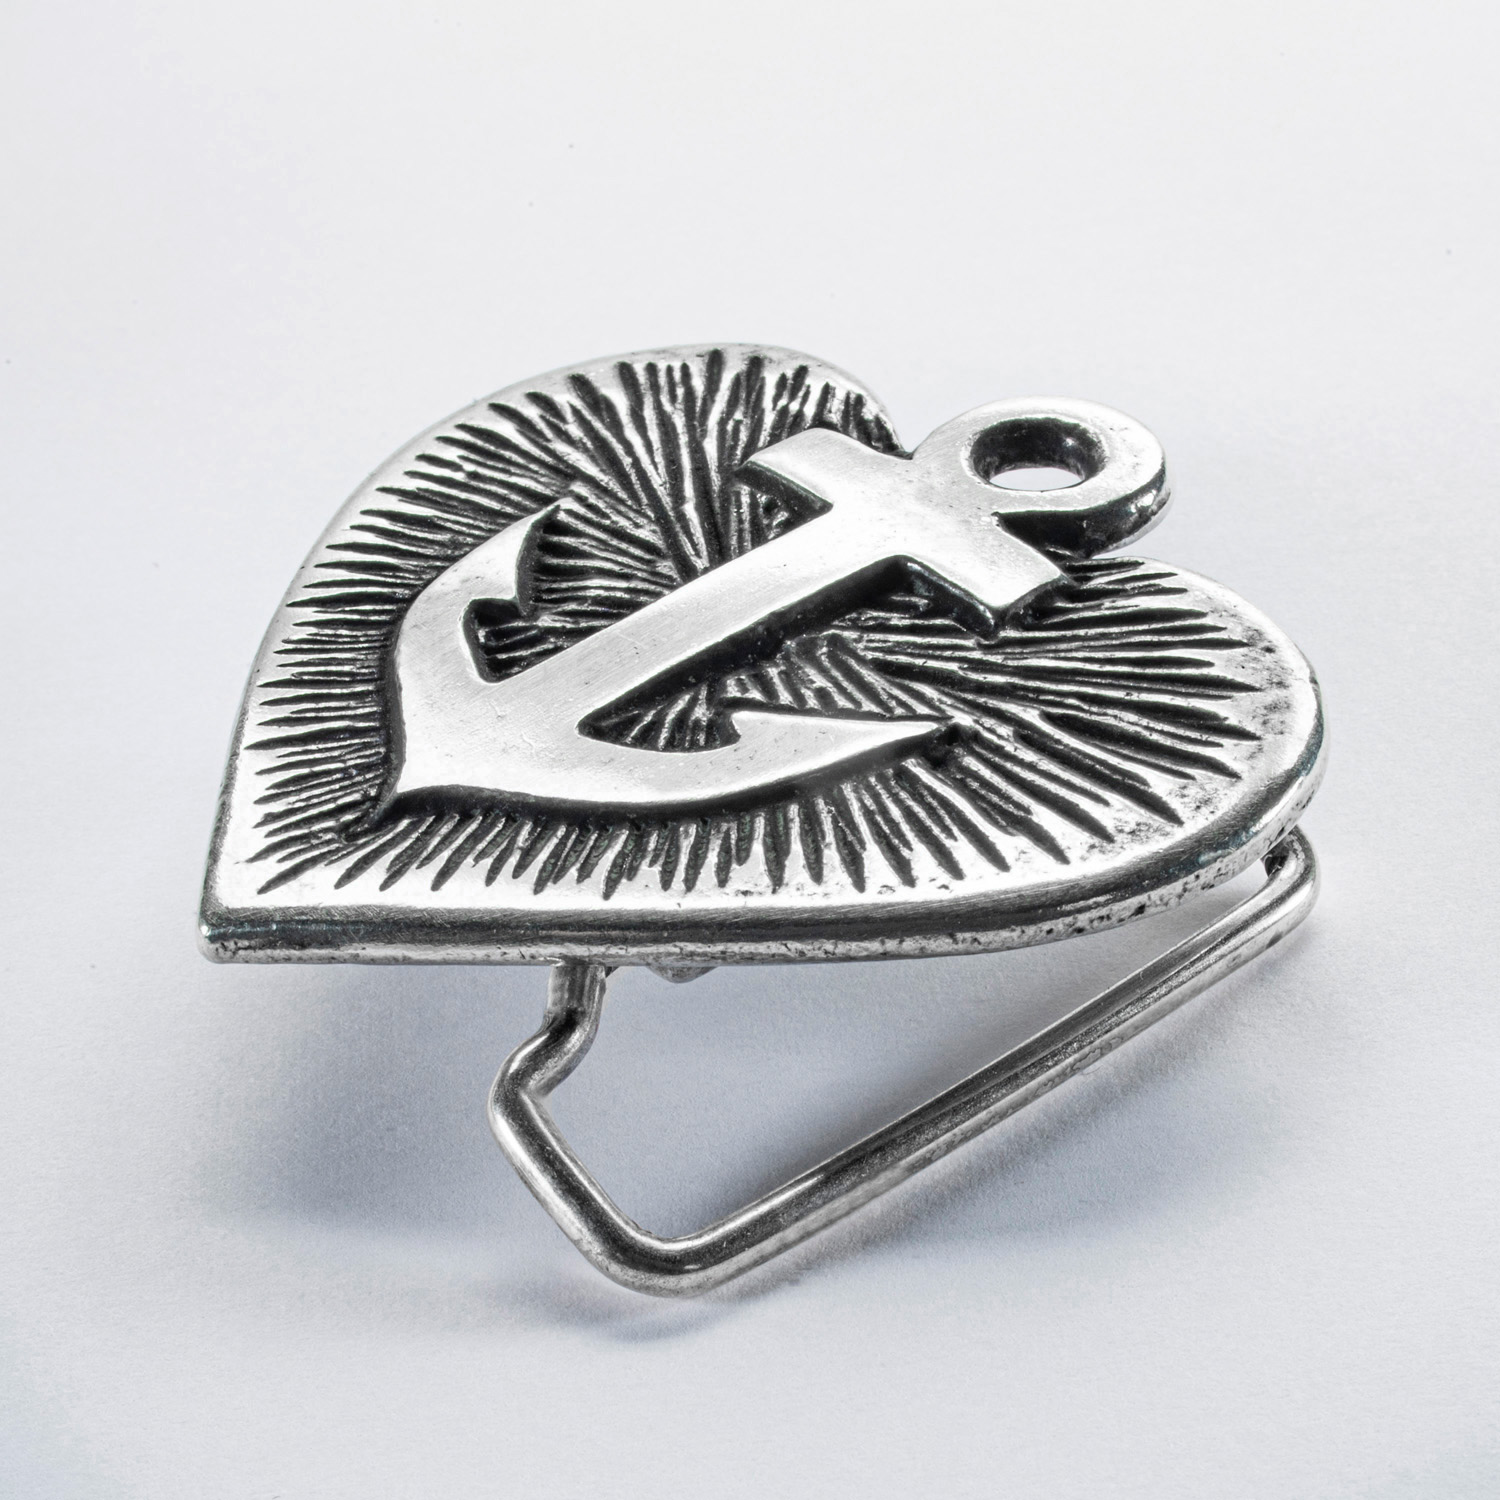 Llavero, anilla decorada con cadena para 7 llaves aproximadamente.